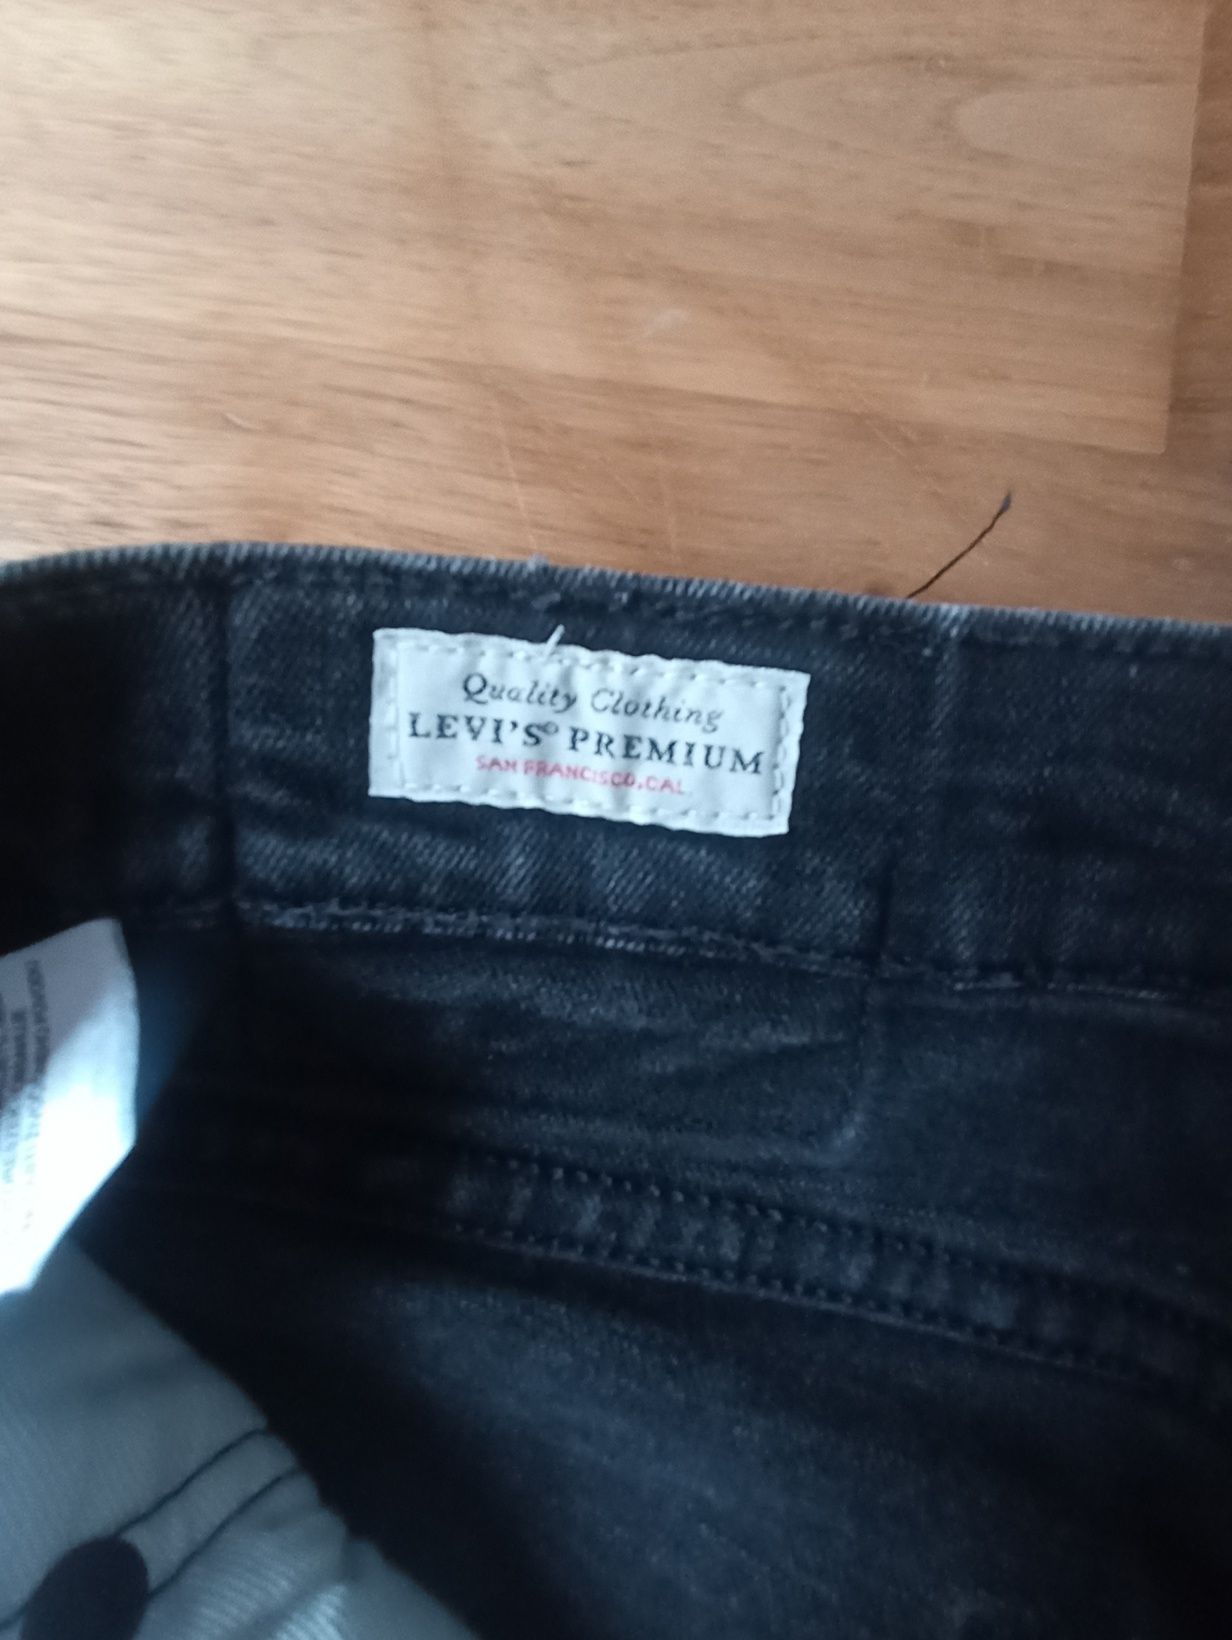 Spodnie męskie jeansowe Levi's 519 W30L32